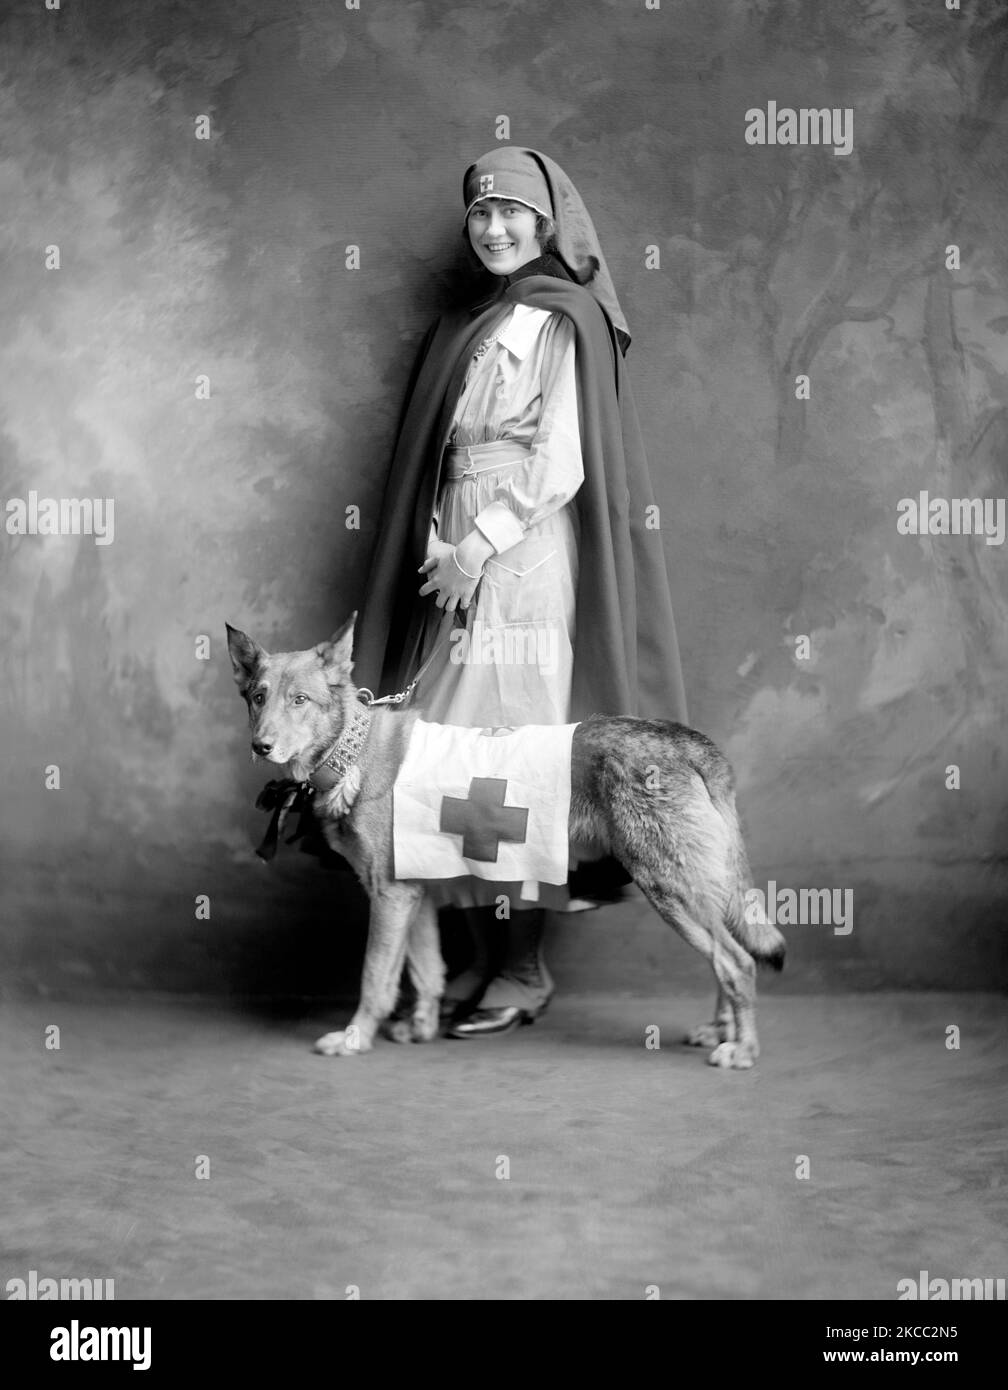 Eine Krankenschwester des Roten Kreuzes in Uniform zusammen mit einem Diensthund des Roten Kreuzes während des Ersten Weltkriegs, 1917. Stockfoto